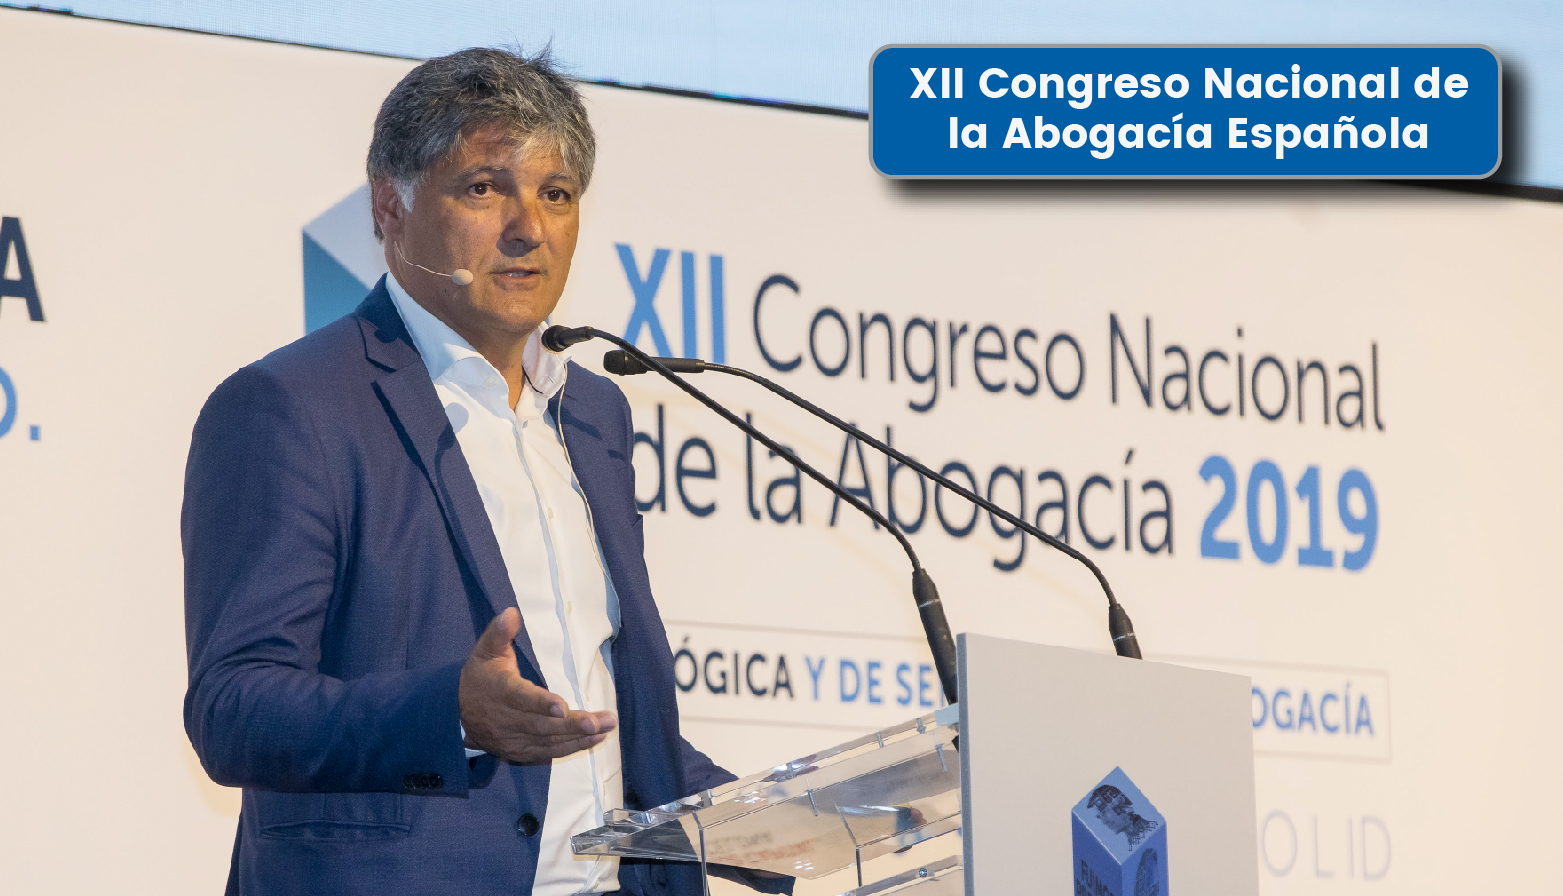 _XII Congreso Nacional de la Abogacía Española